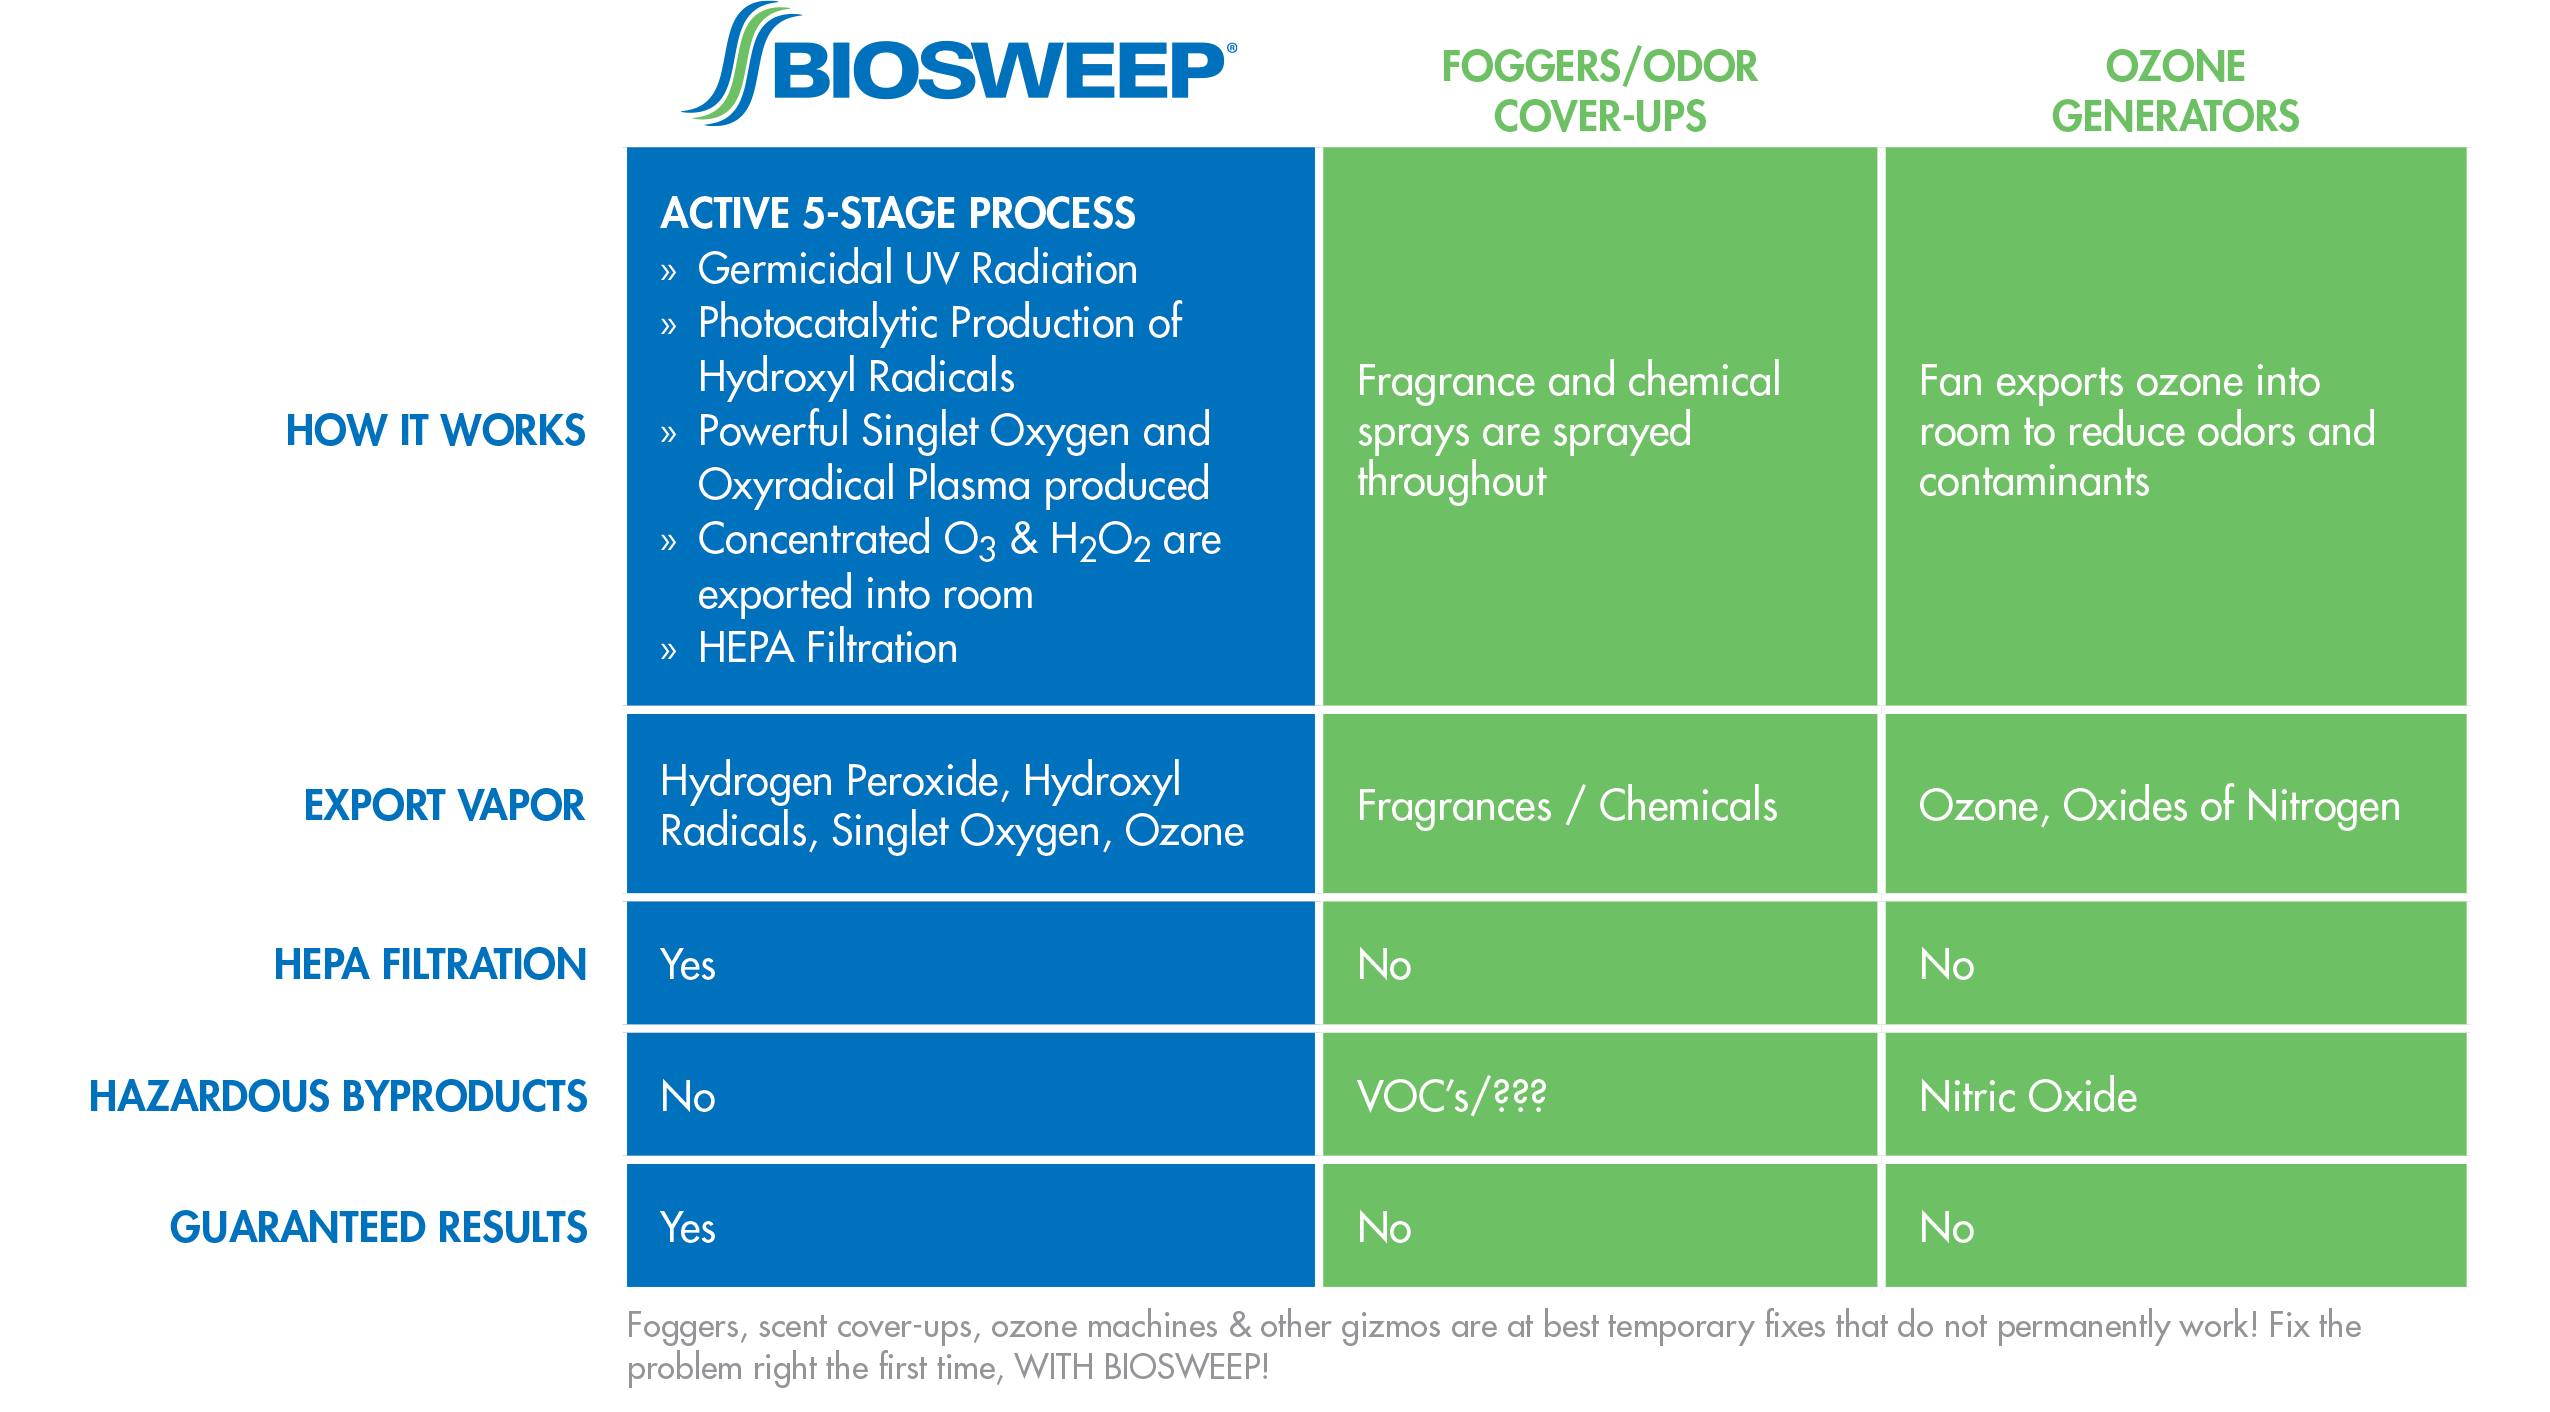 BioSweep Comparison